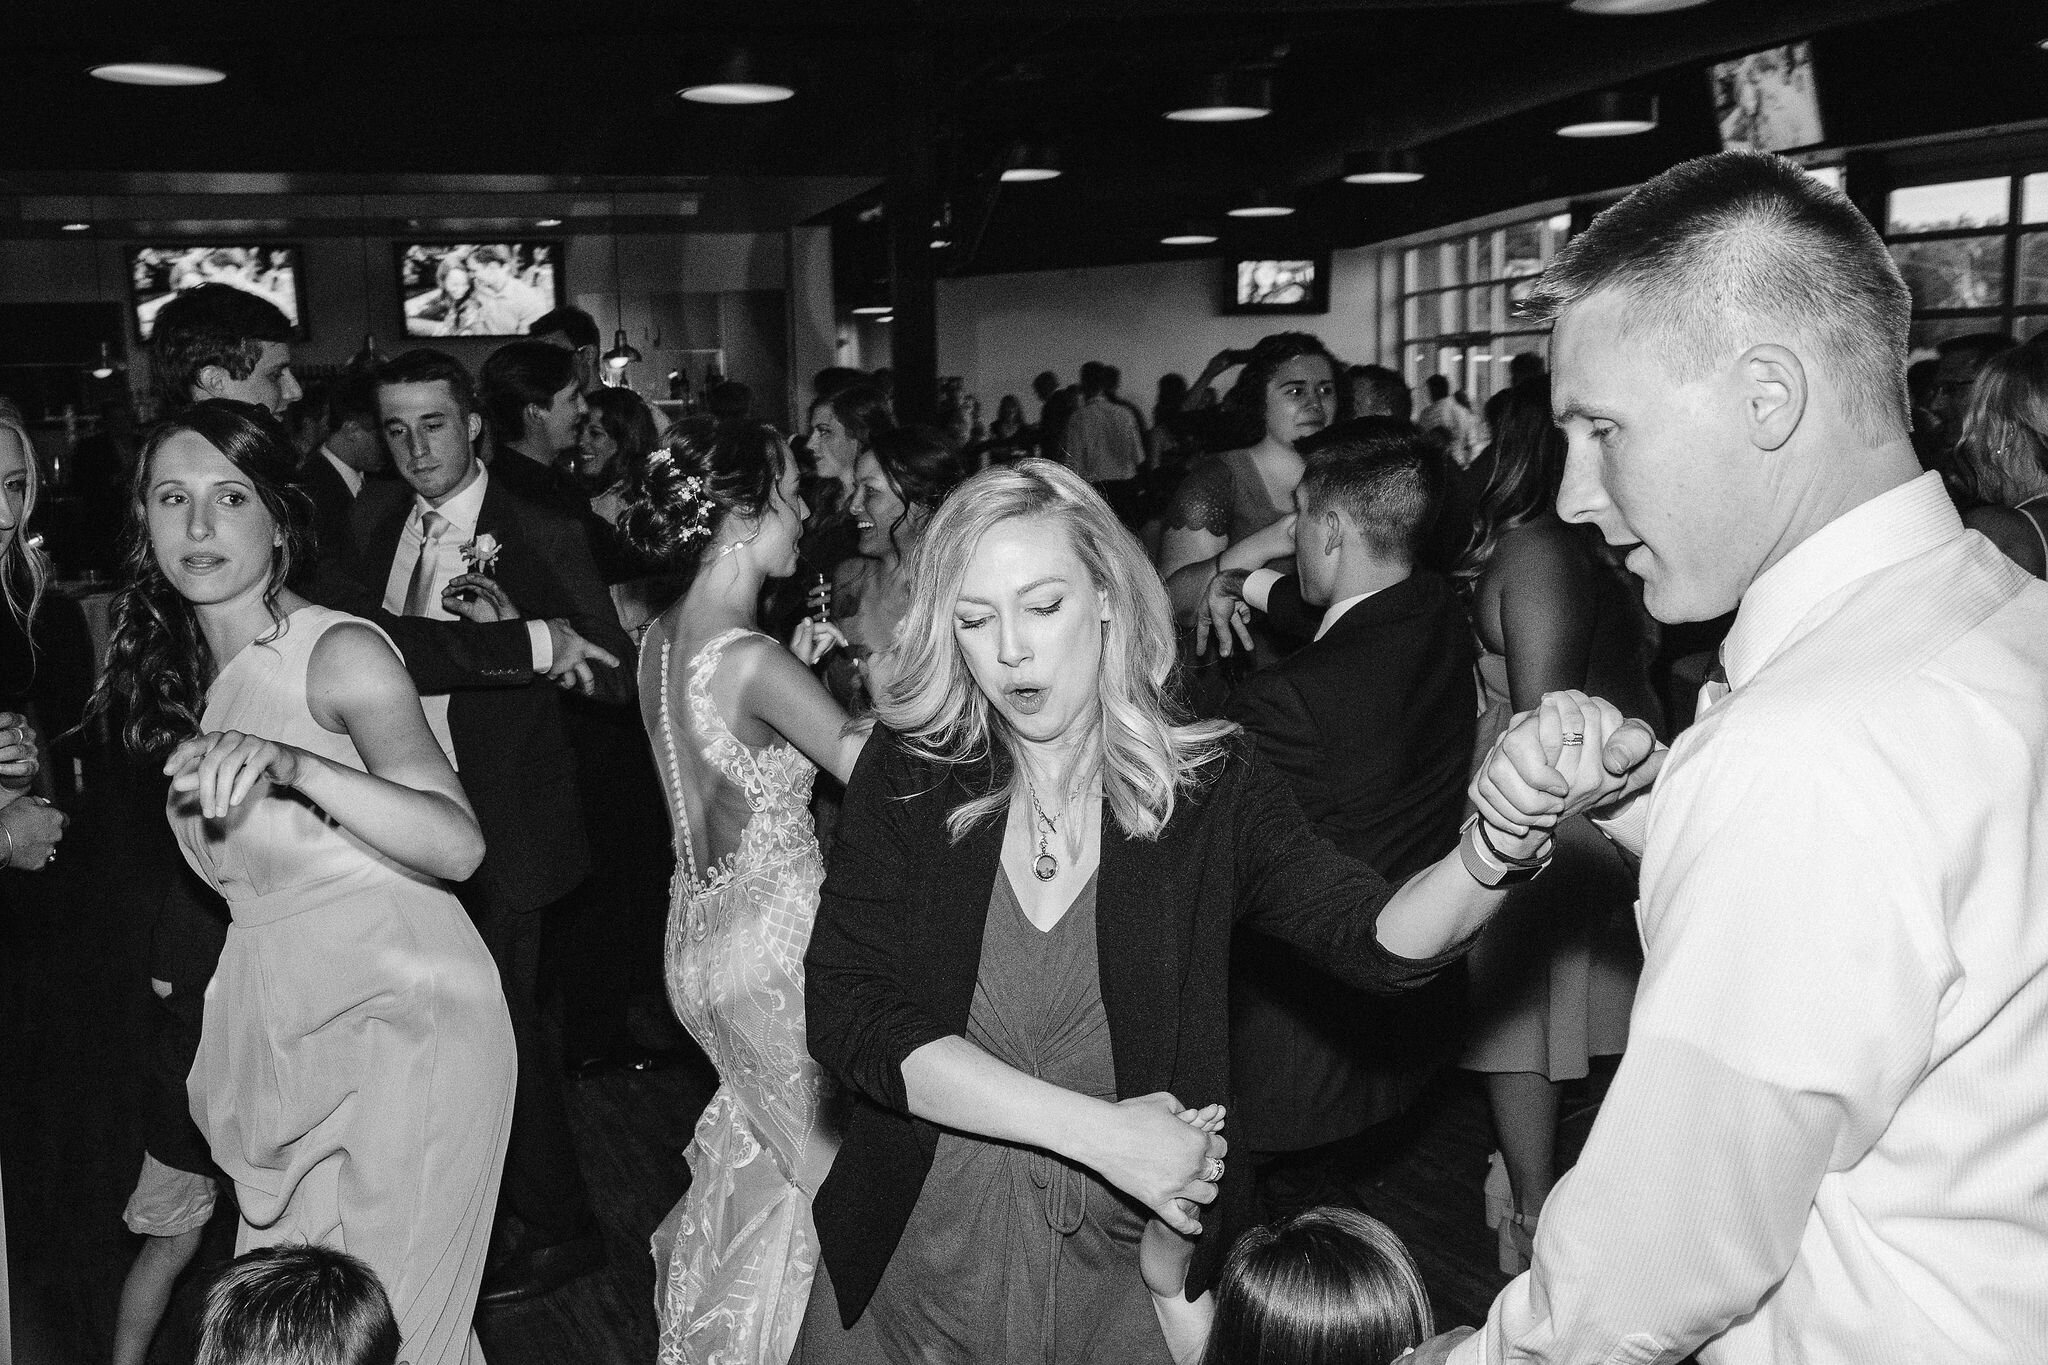 Wedding guests dancing